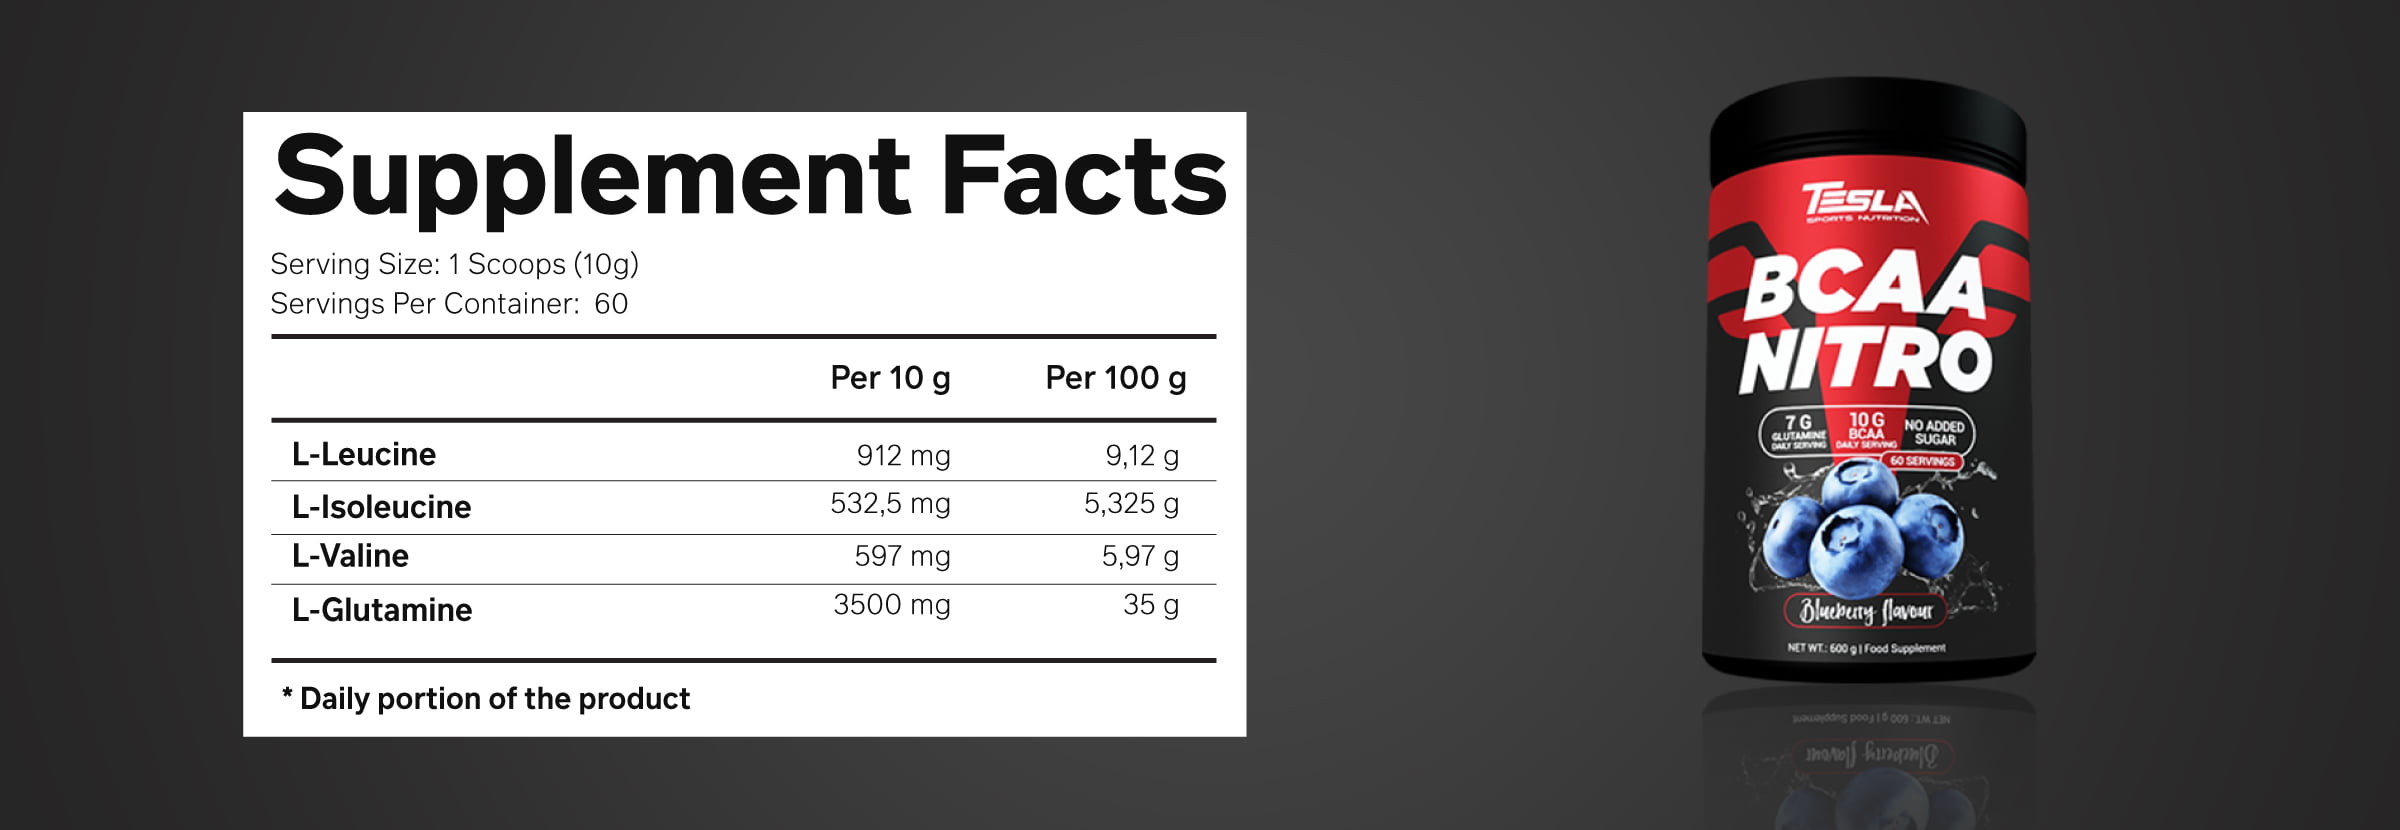 جدول حقائق تغذية - تسلا - BCAA نيترو - توت ازرق - 600جم